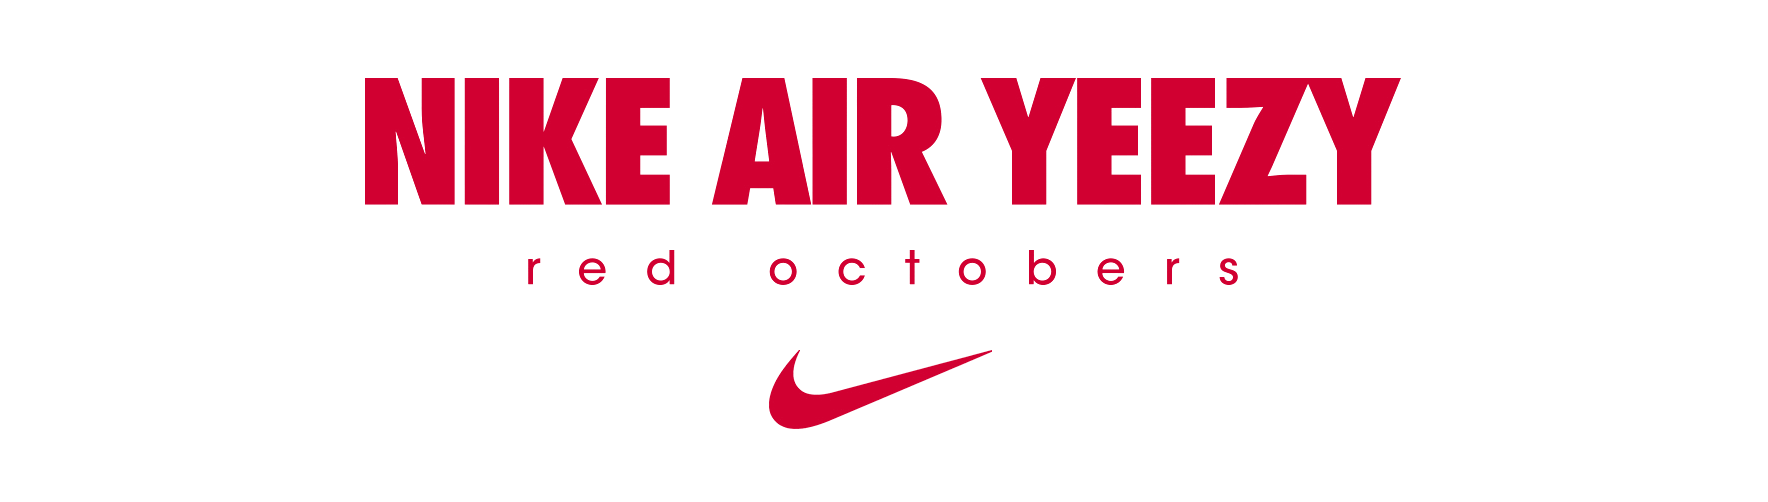 Nike Yeezy Logo - LeRoi3 / Digital Artist AIR YEEZY II X RED OCTOBERS